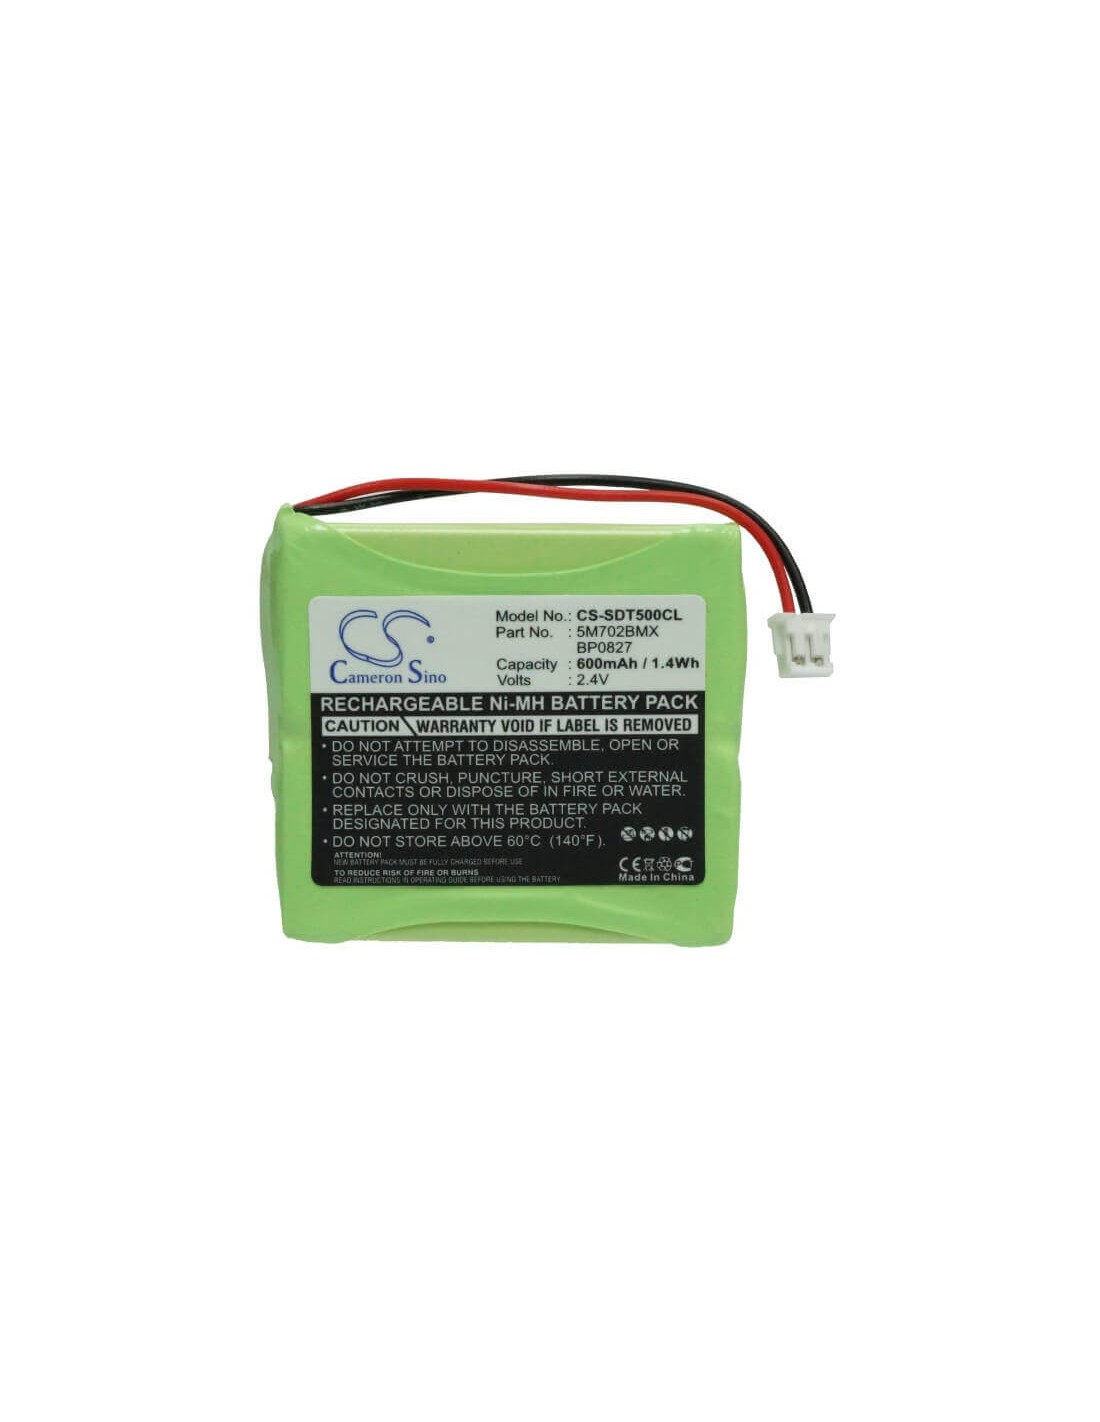 Battery for Switel, Df 812, Df 812 2.4V, 600mAh - 1.44Wh